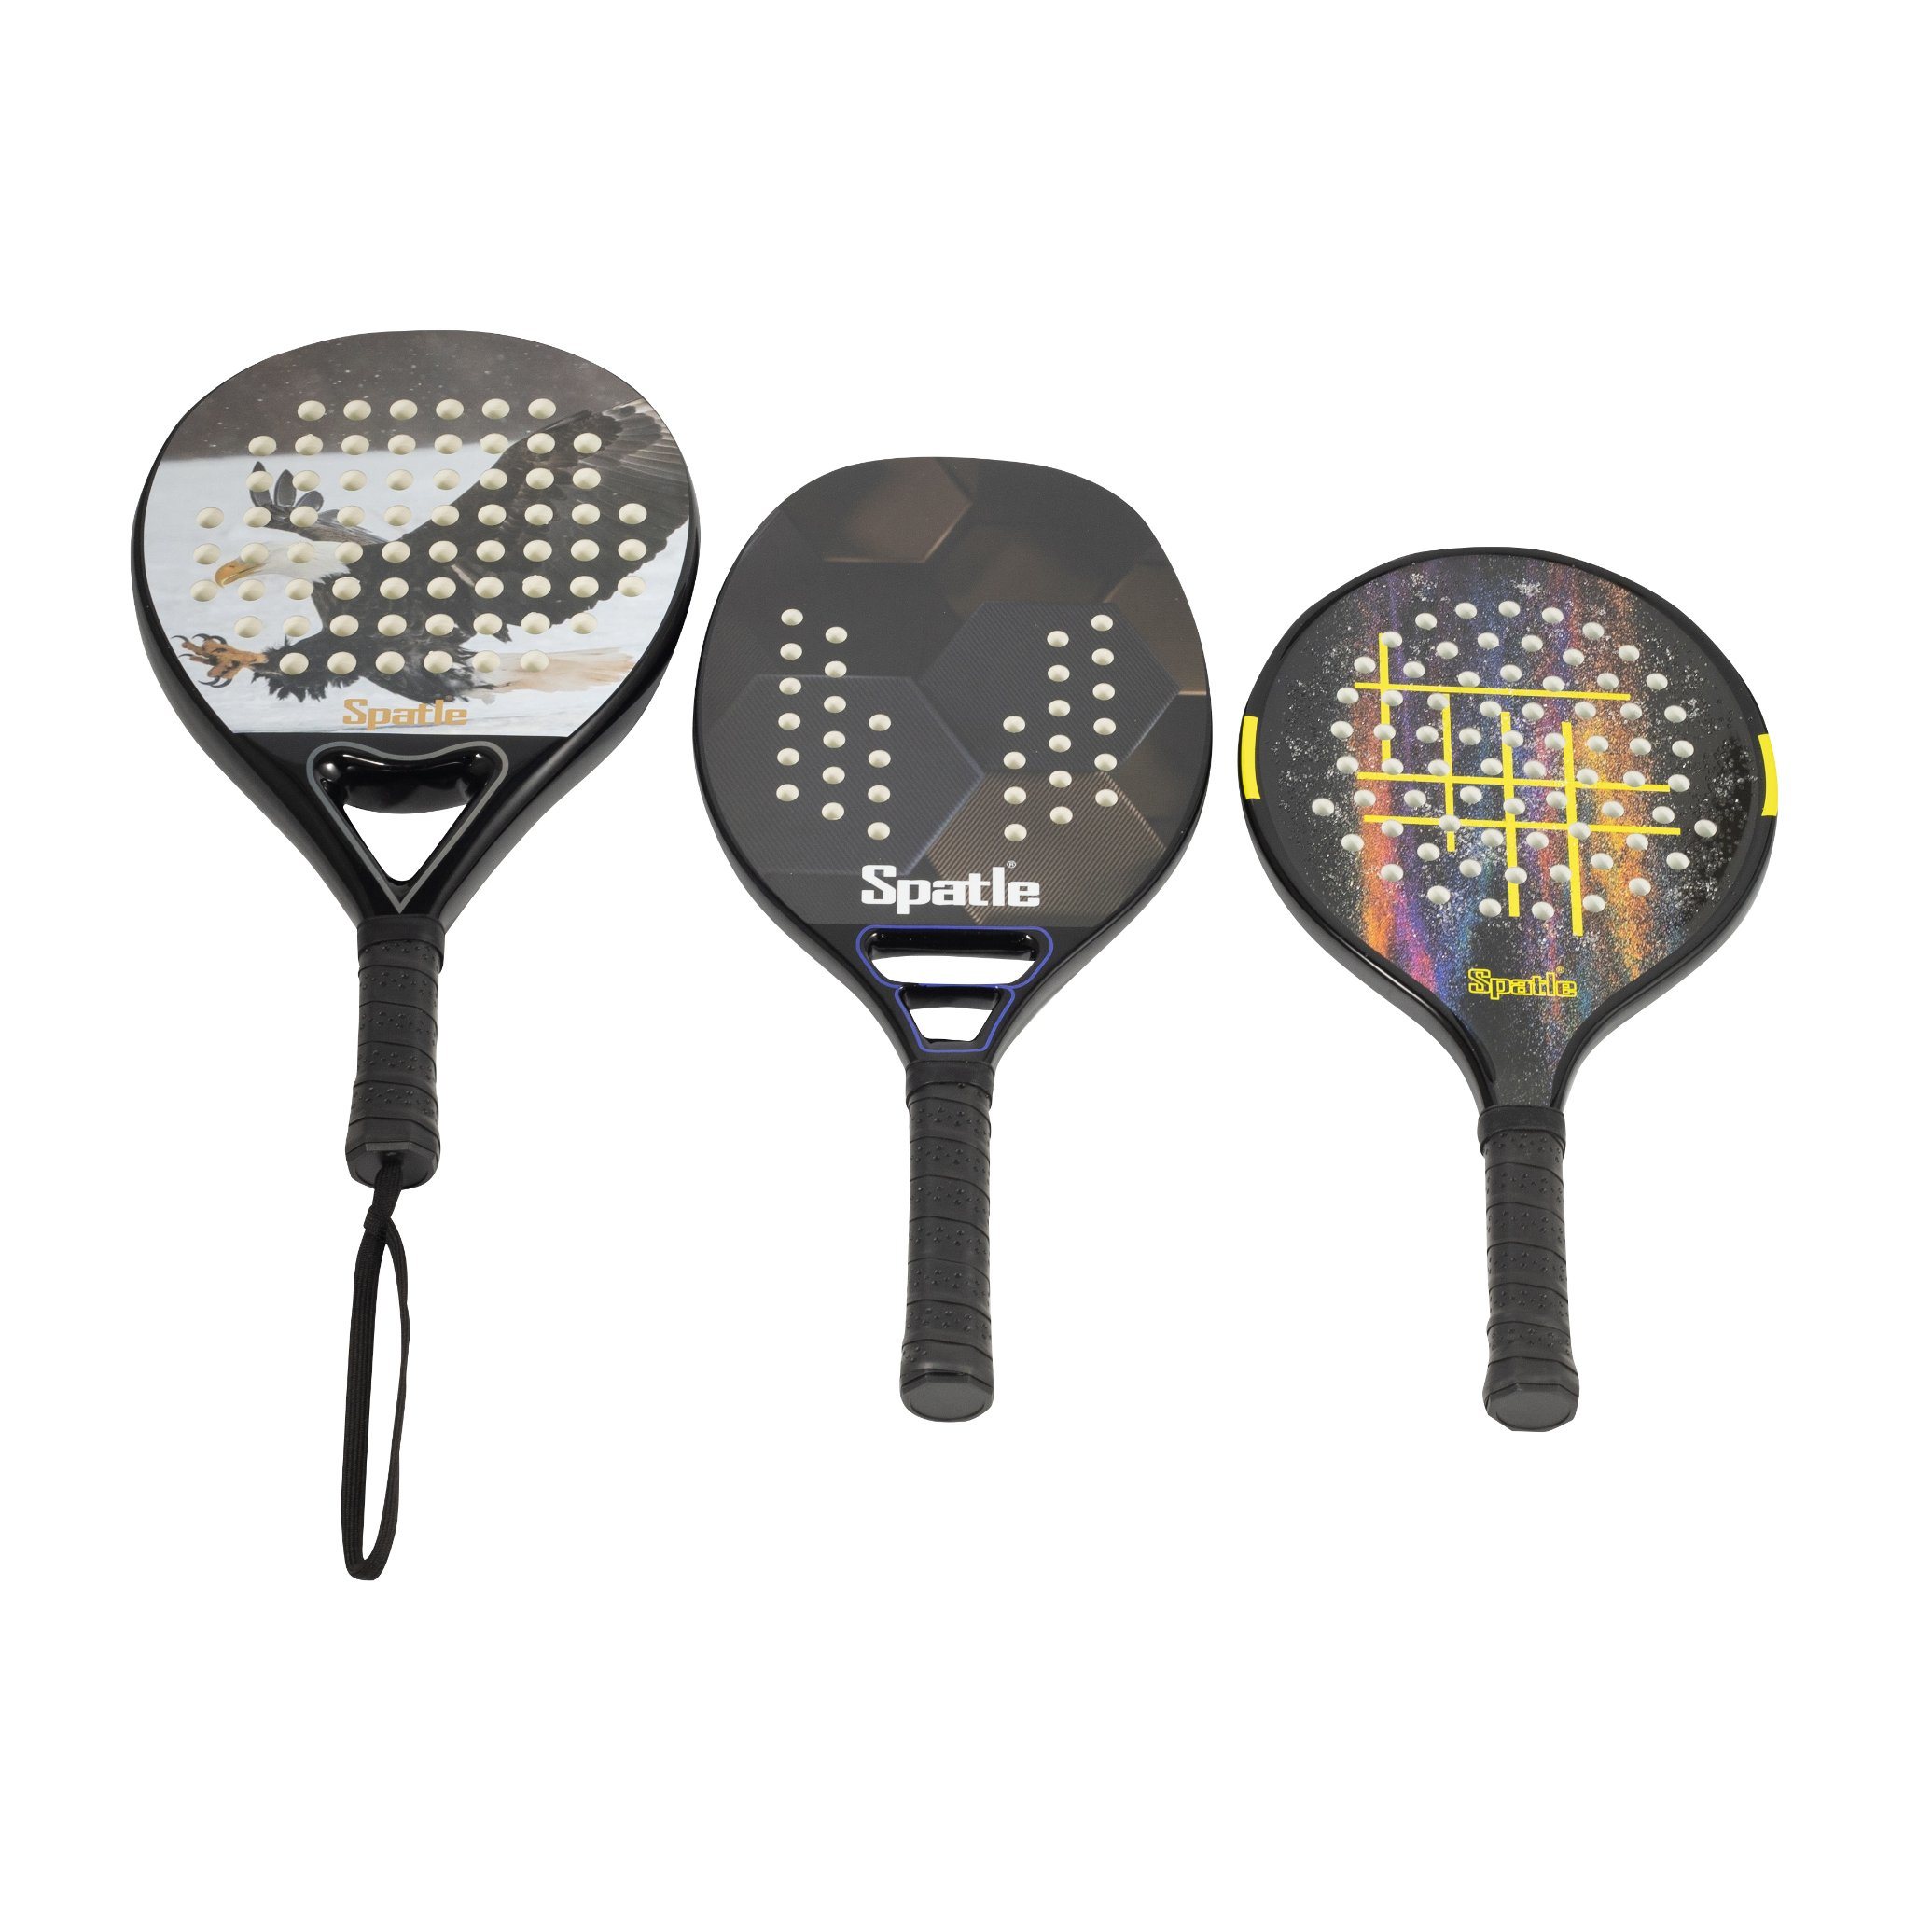 Raquetas de tenis de raqueta de paleta de carbono personalizadas en color